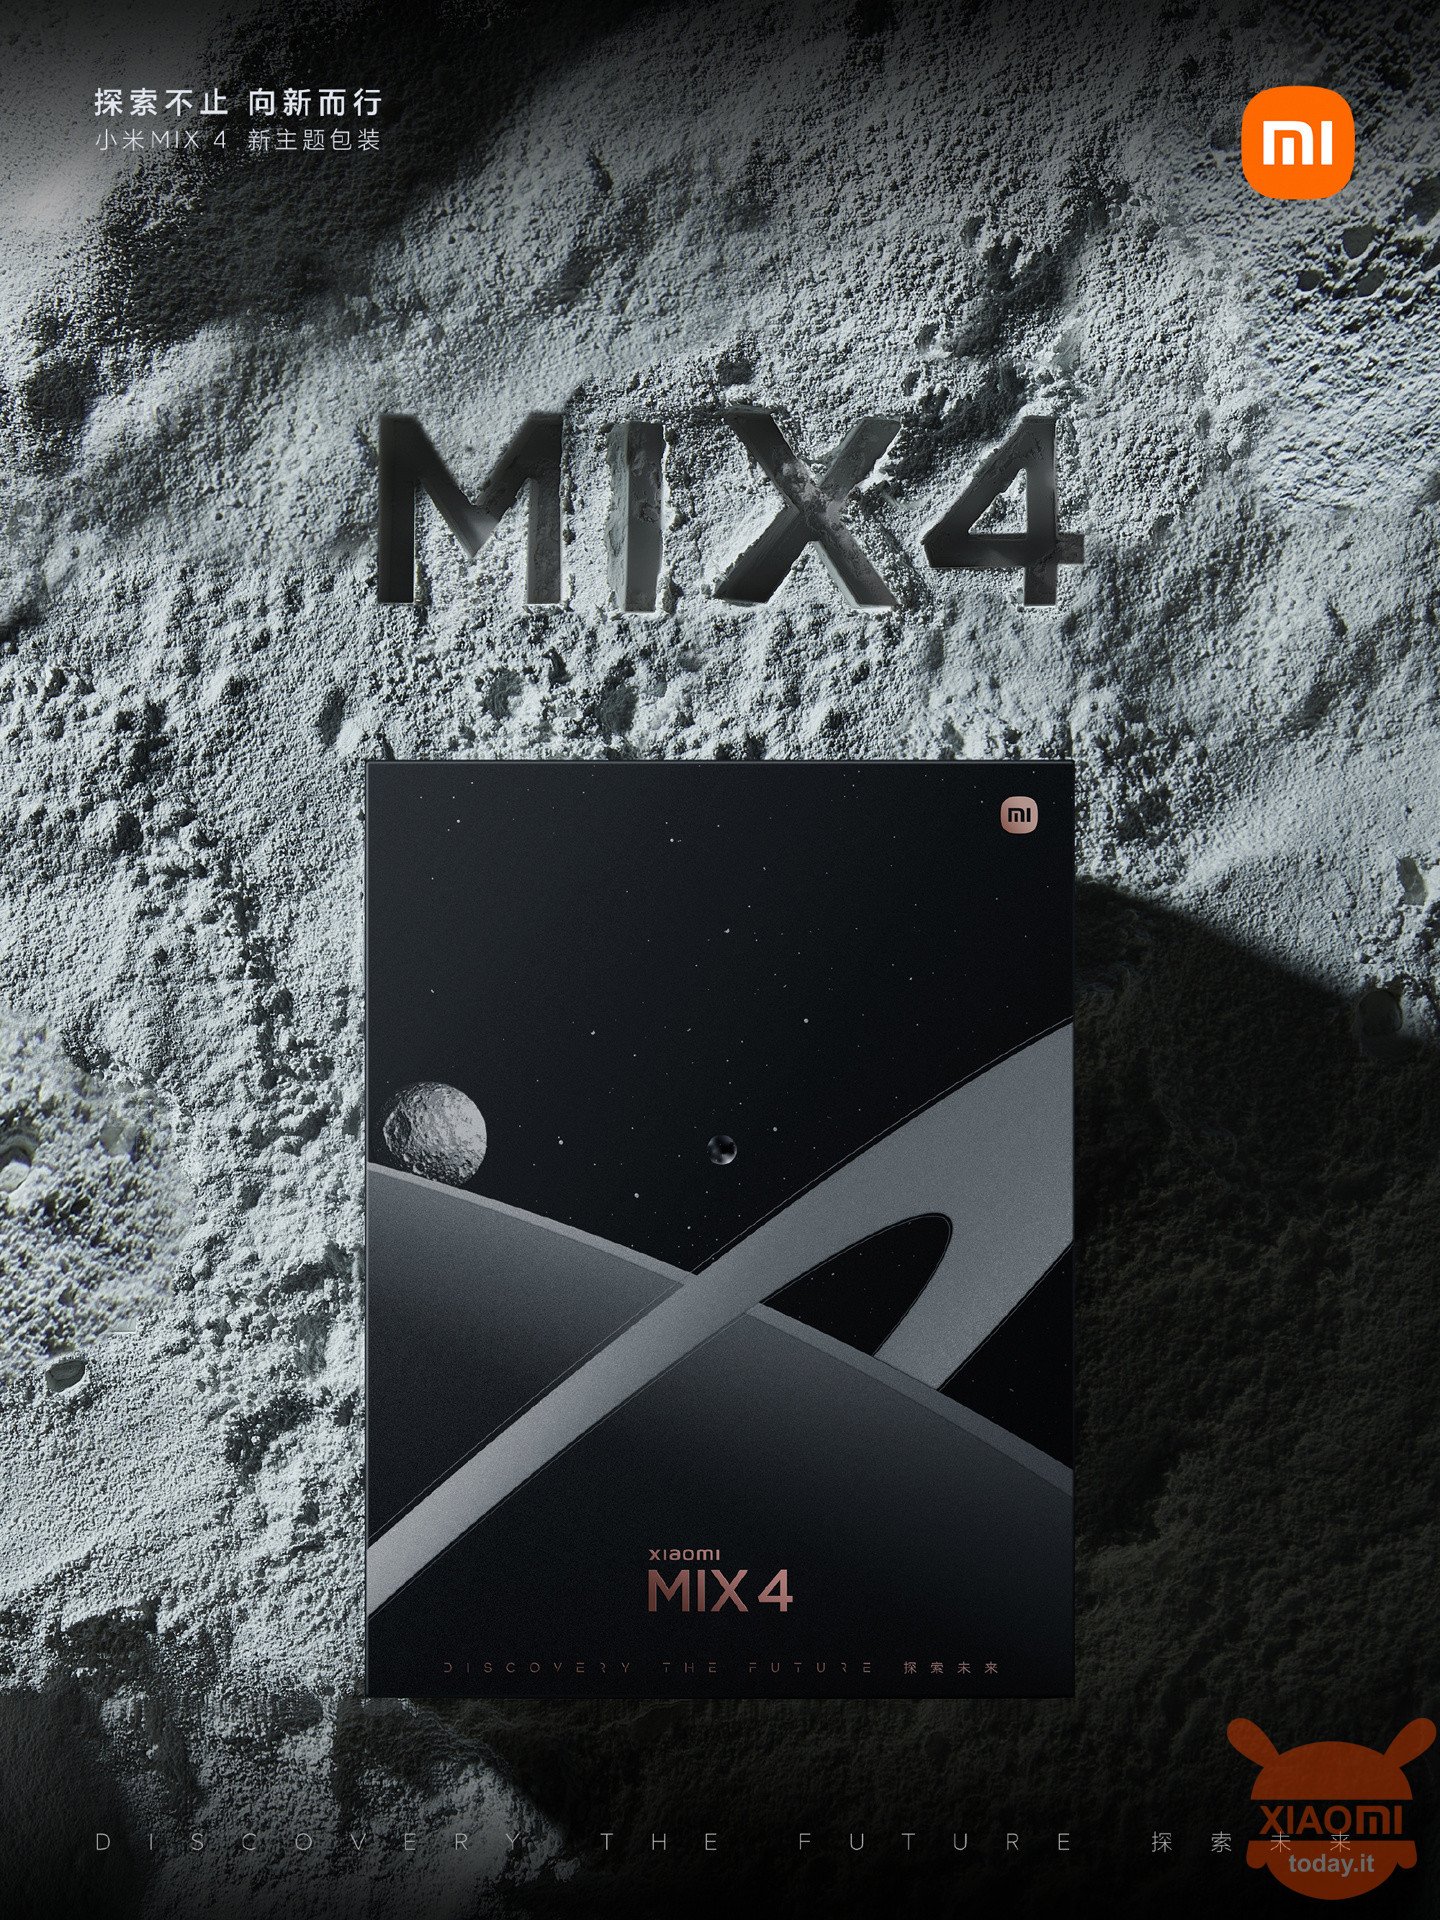 xiaomi mix 4 special edition dedicata a saturno